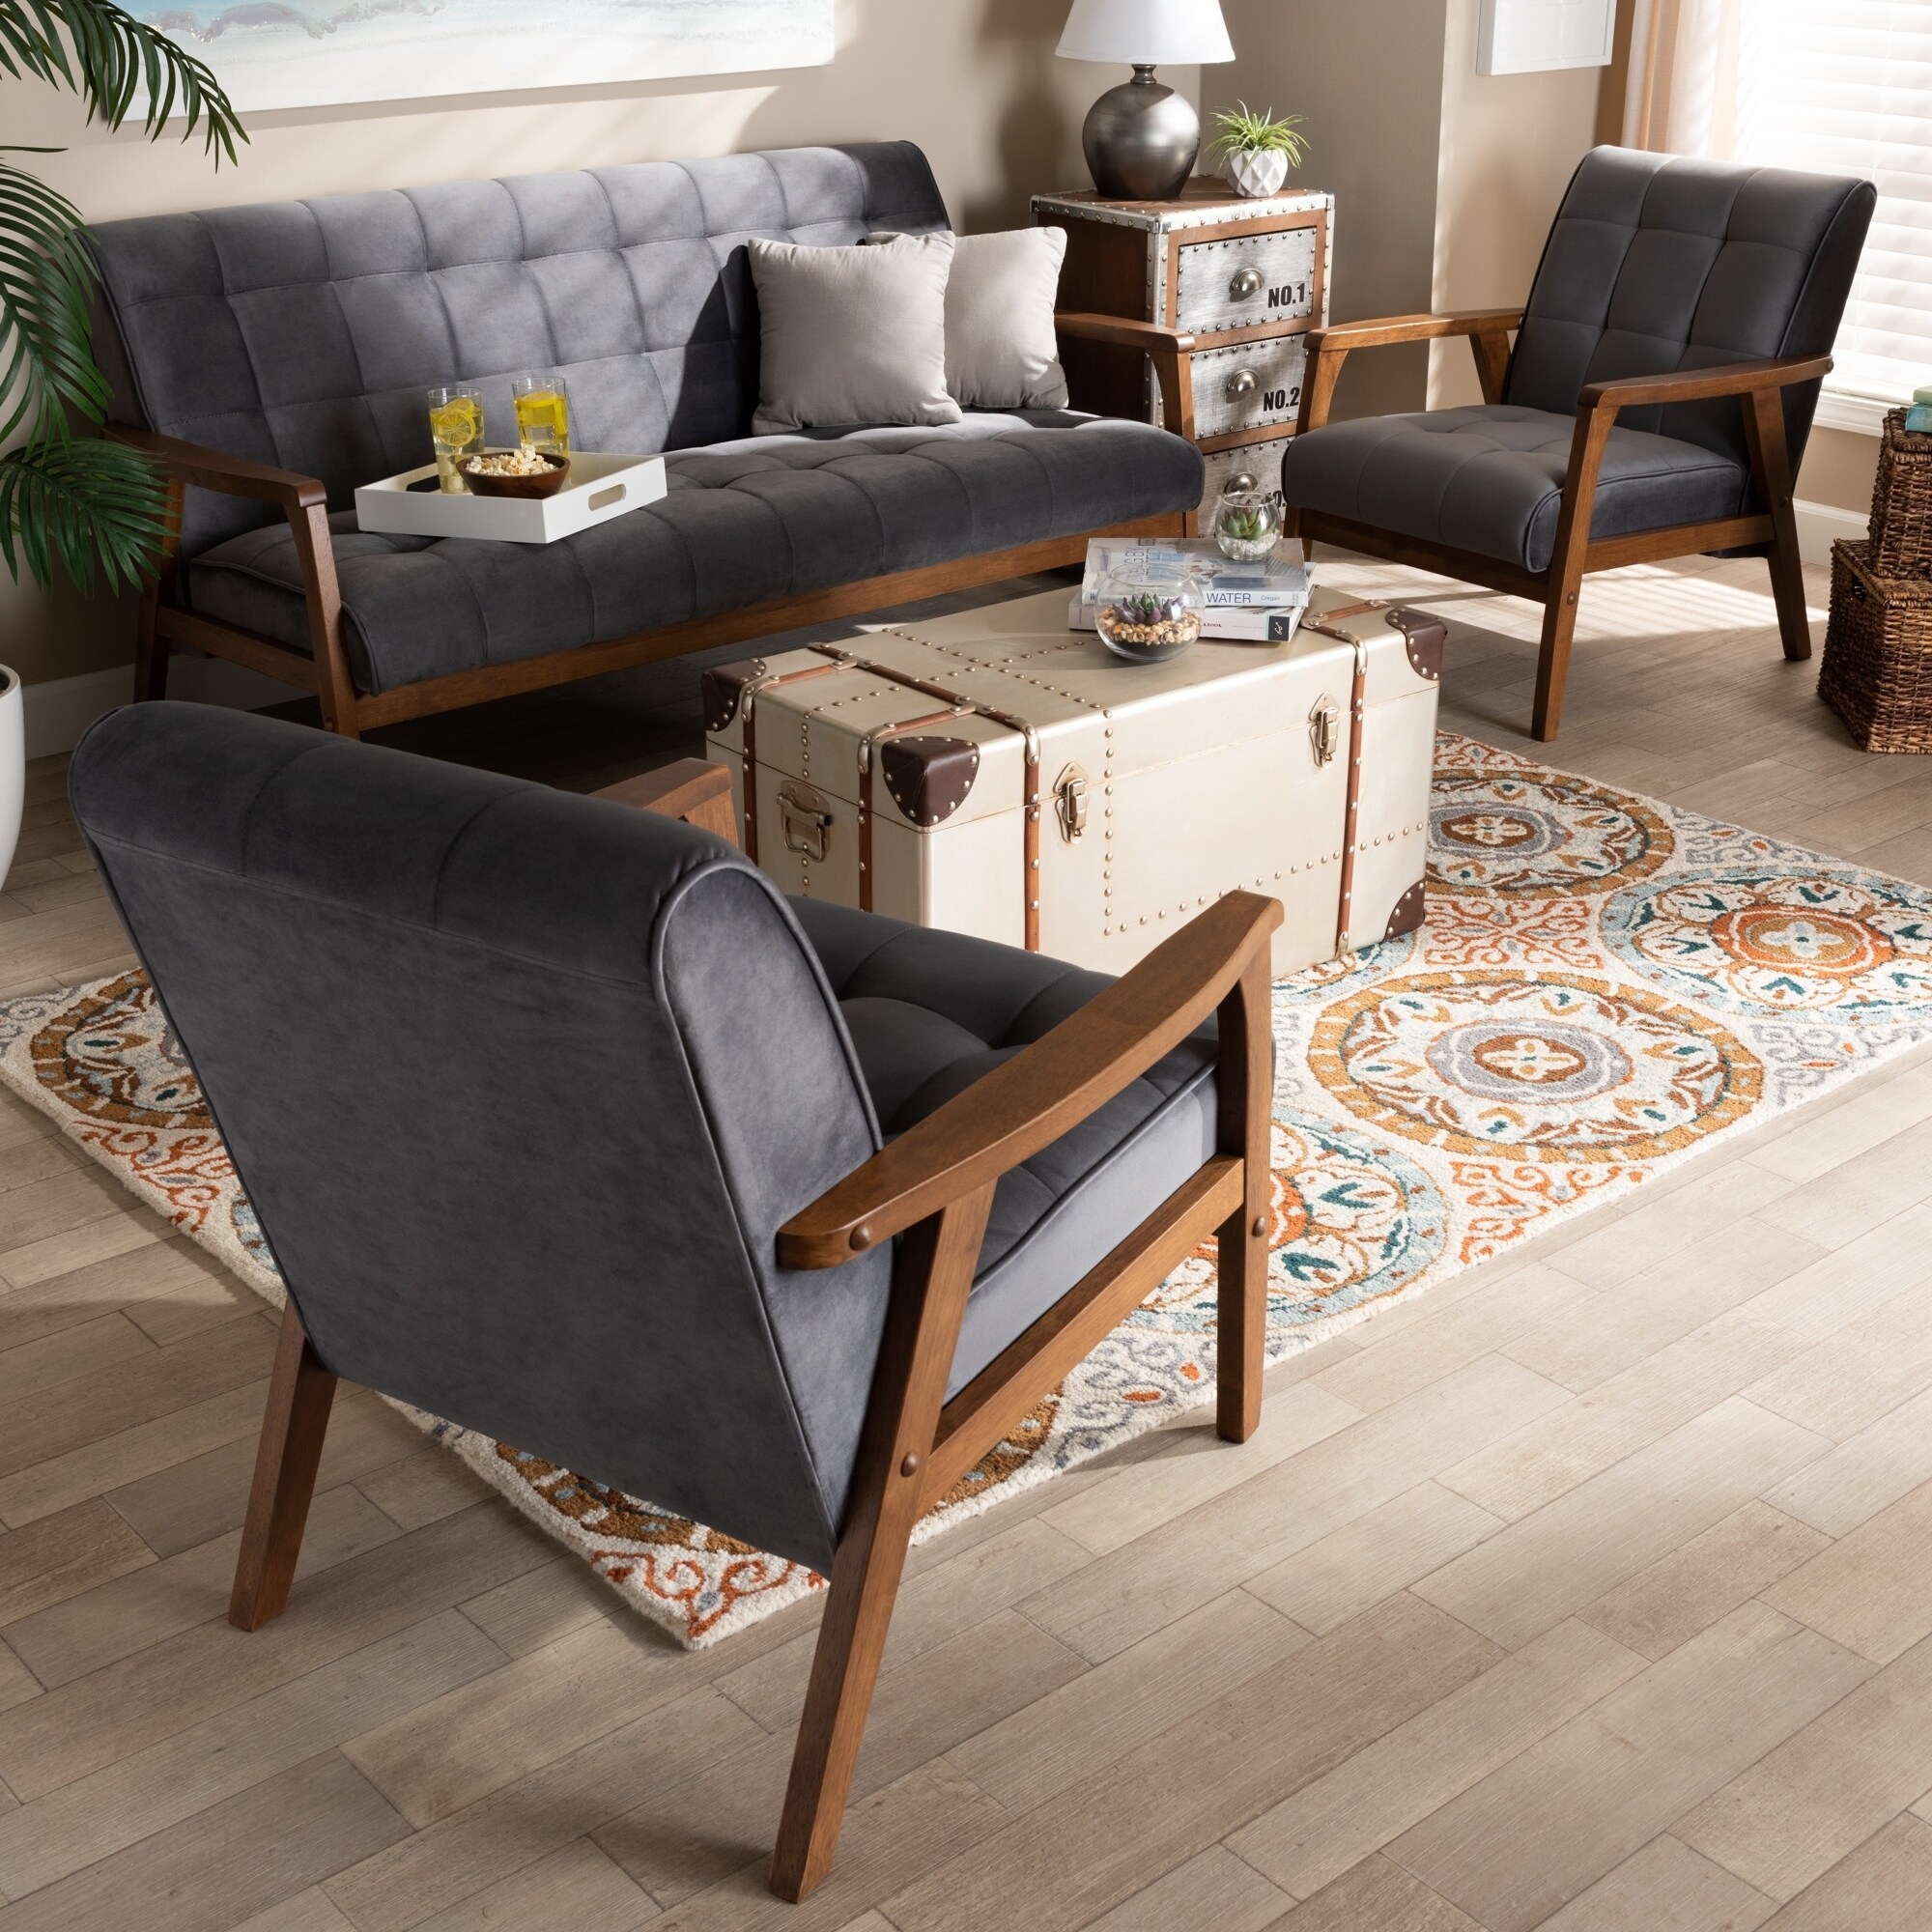 Mid Century Modern Living Room Table Set - Joeryo ideas